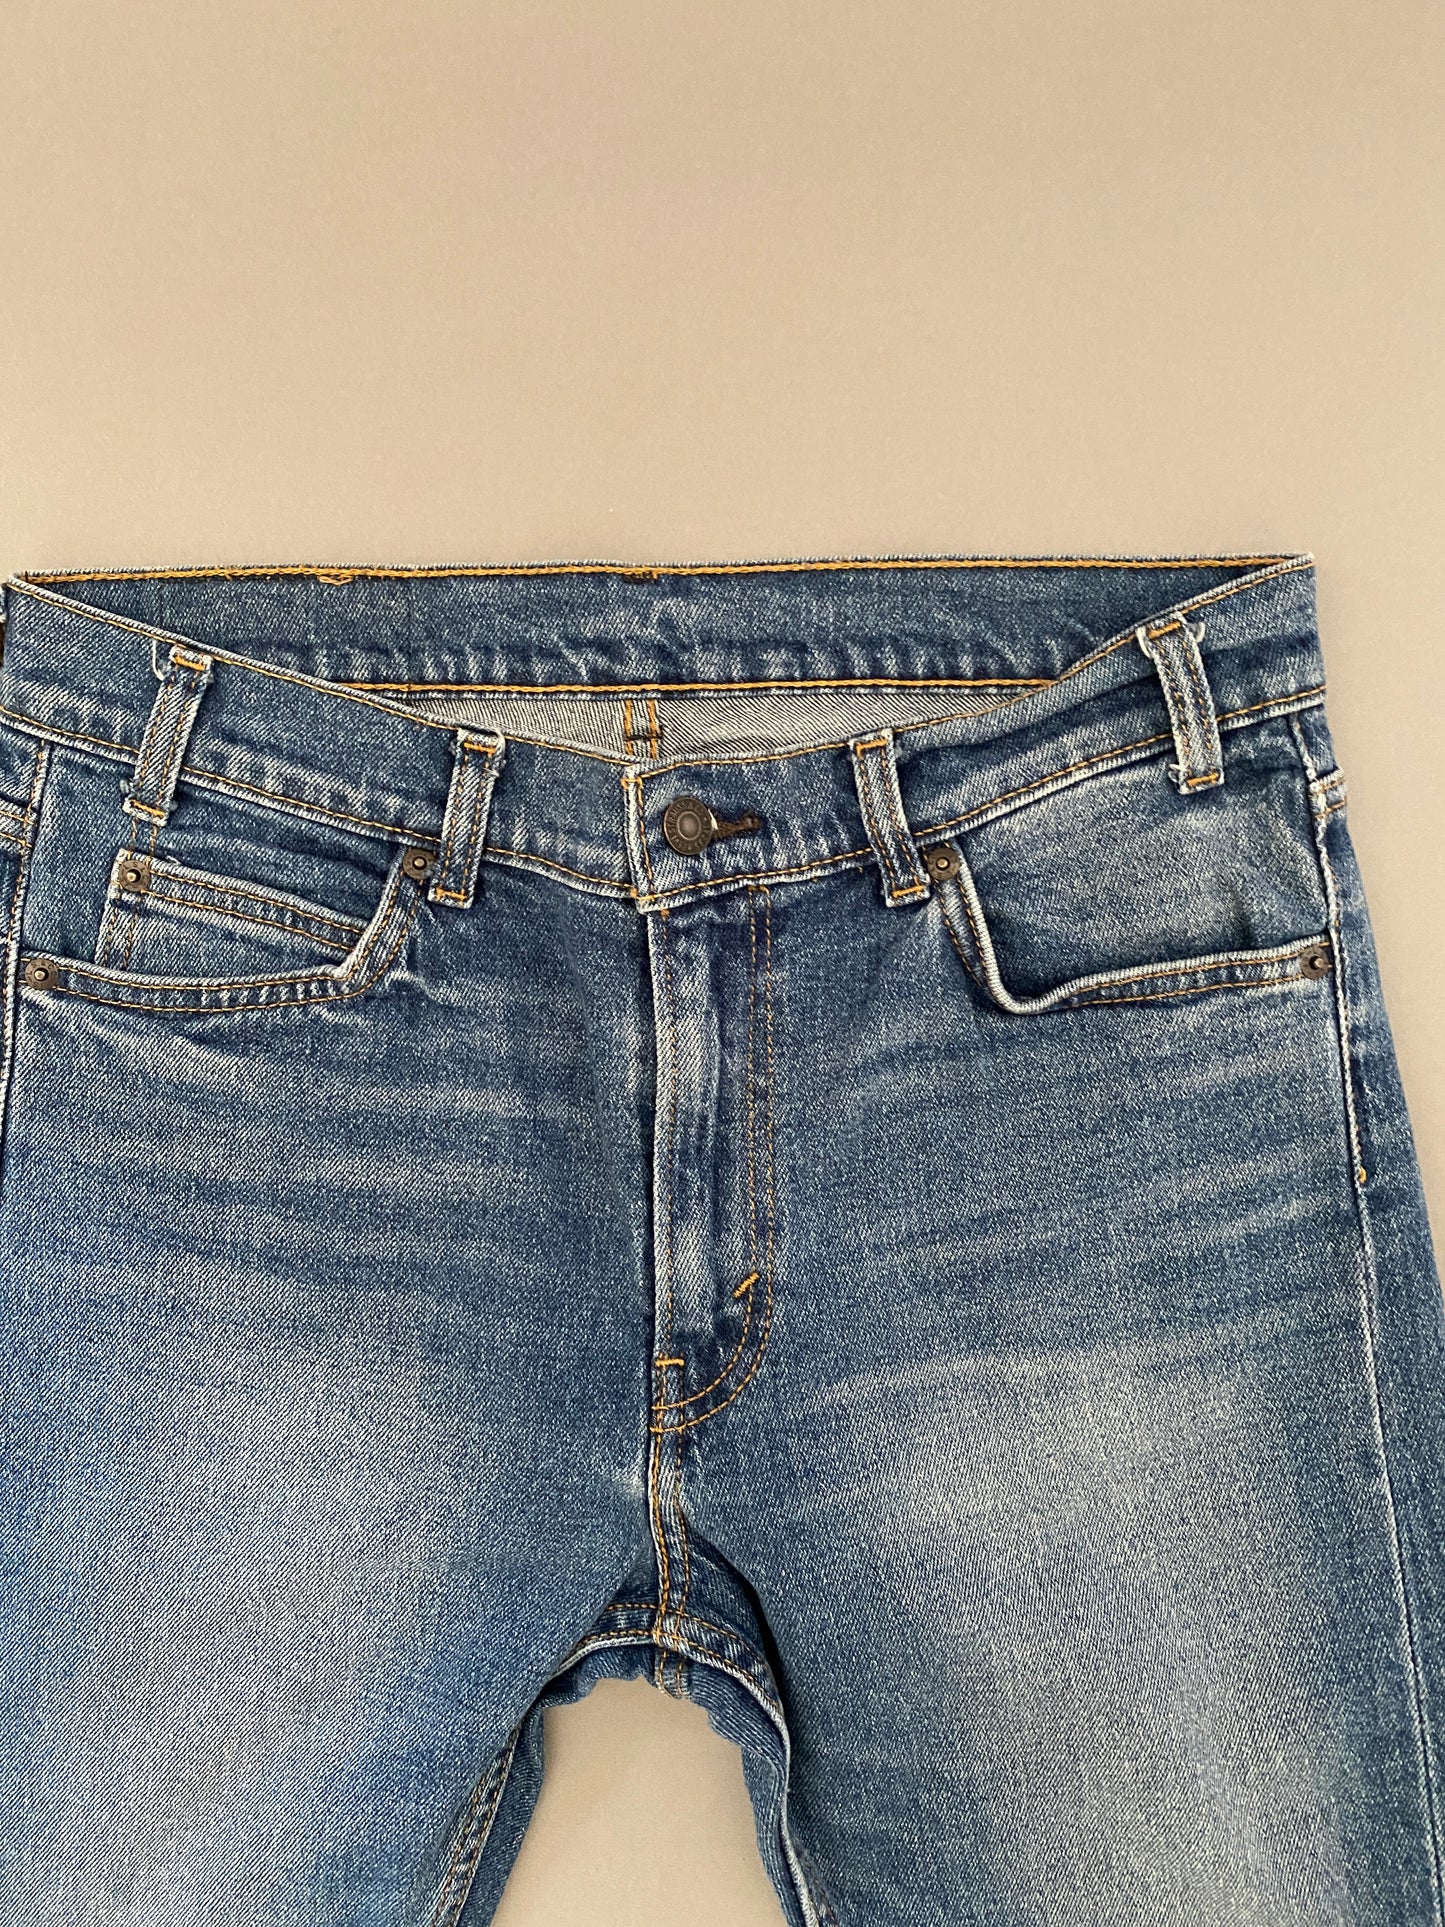 Jeans Levis 505 C